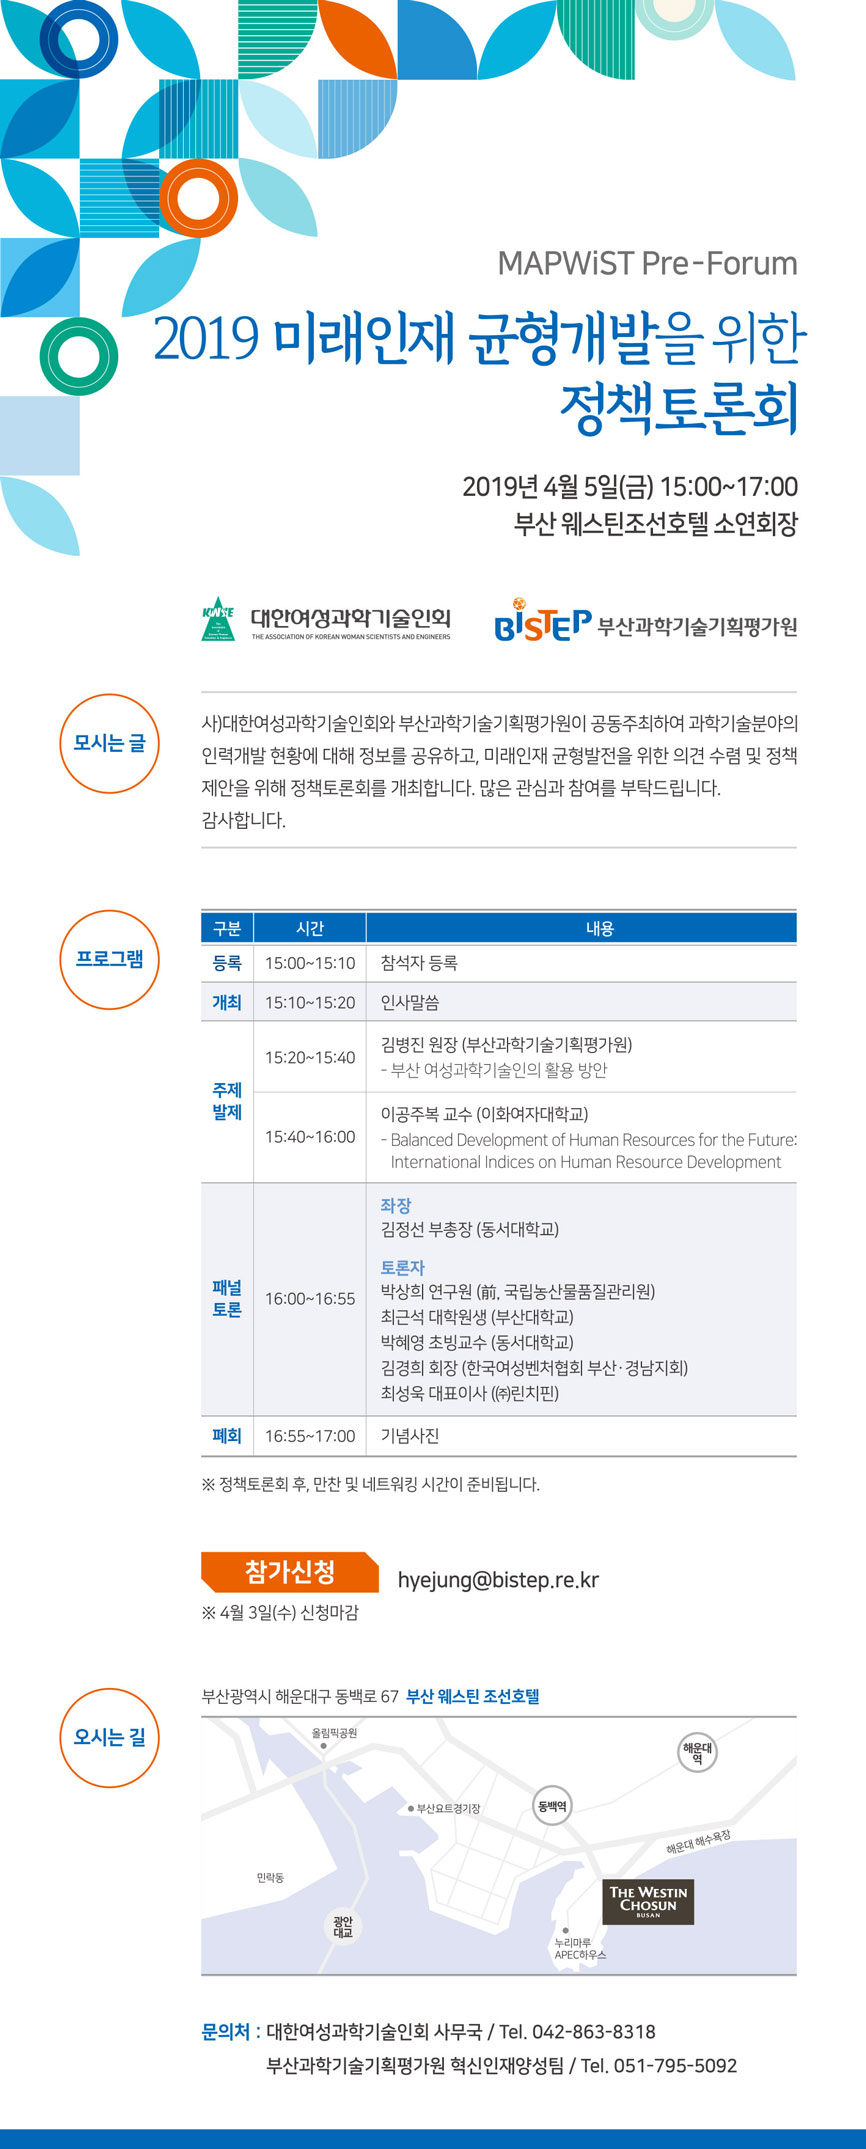 2019 미래인재 균형개발을 위한 정책토론회 개최 안내